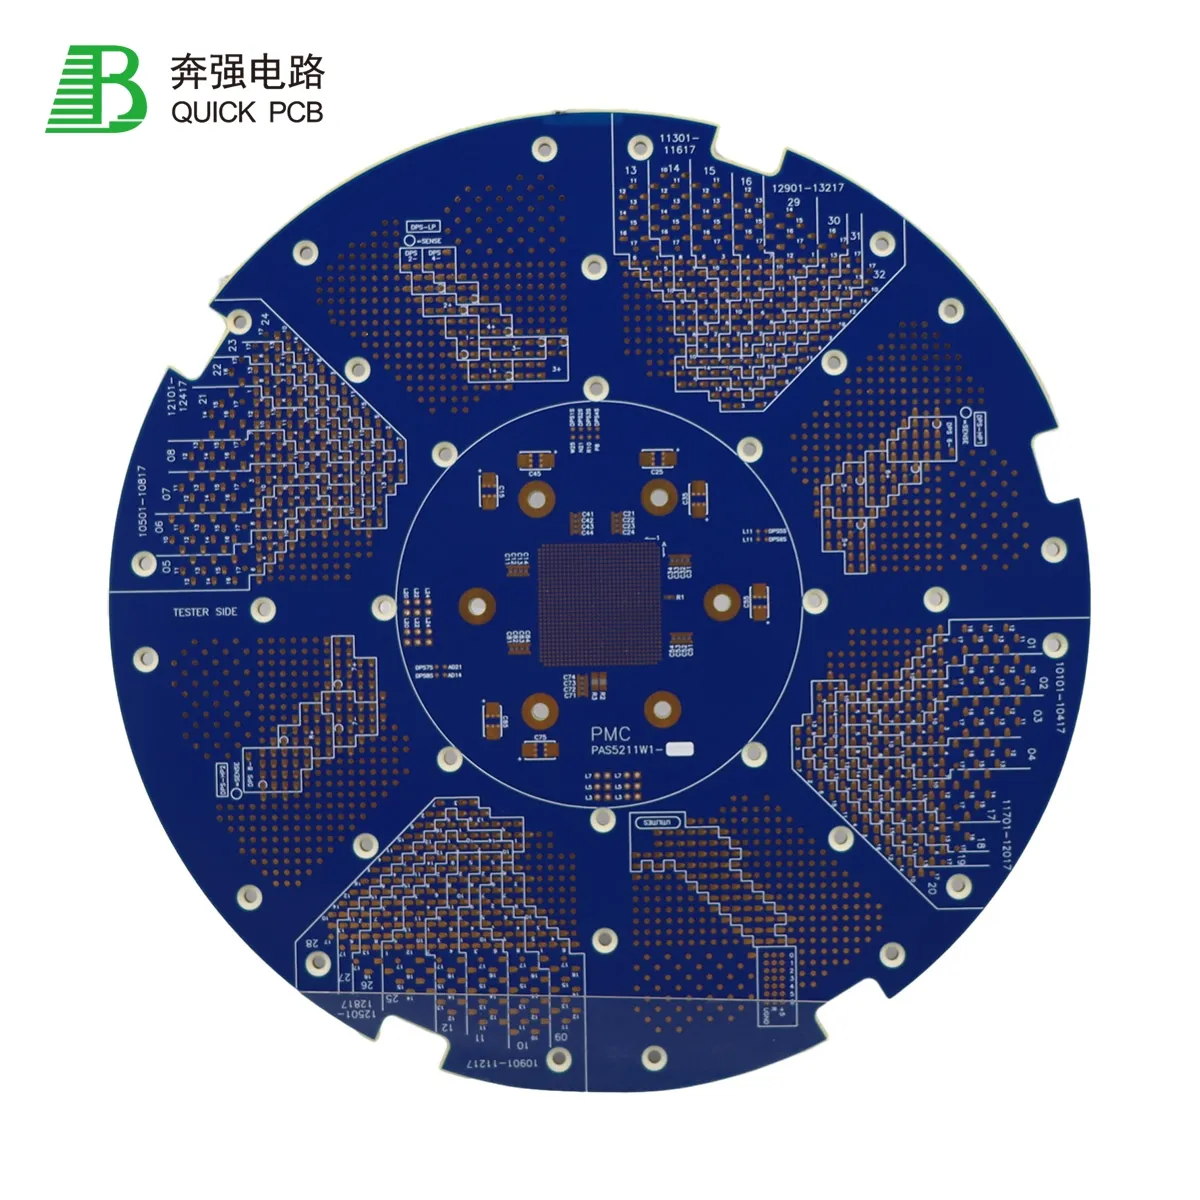 サンプルプリント回路基板メーカー電子OEM PCB設計ソリューションマザーボードPCBボードキットセット